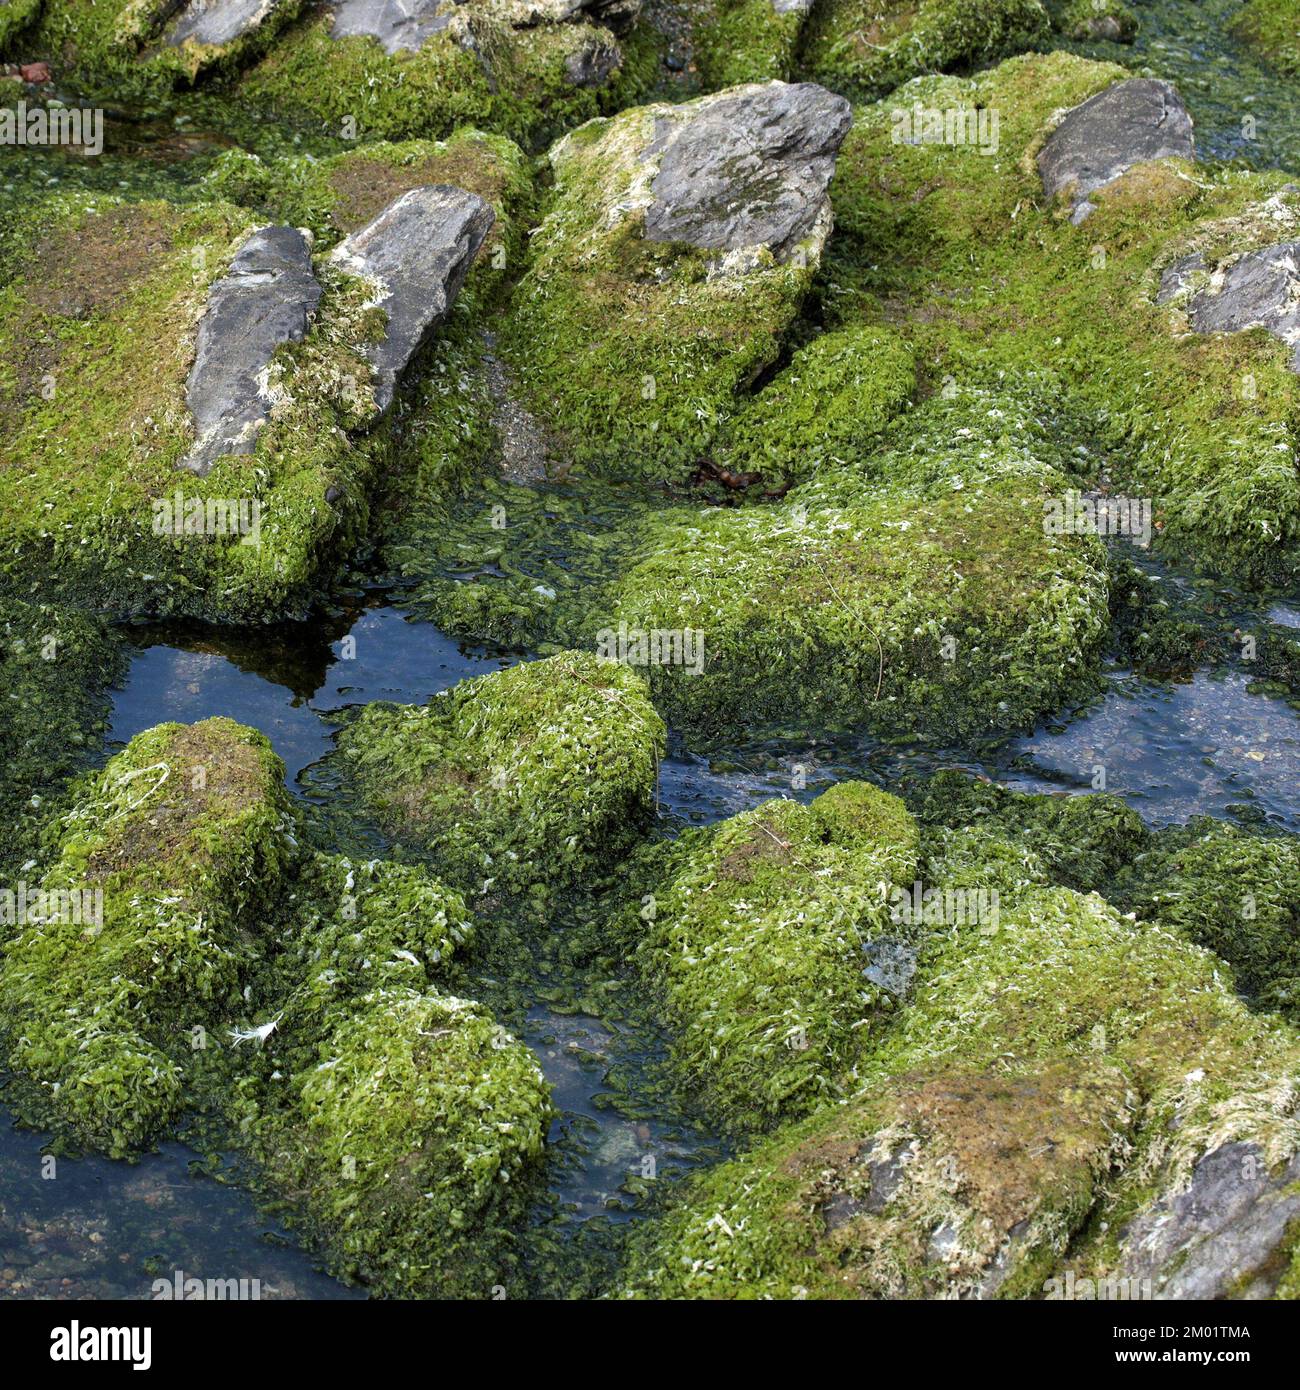 Fotografia a colori della roccia costiera ricoperta di muschio l'immagine è una miscela di piante marine e geologia che mostra i modelli rocciosi e le texture. Foto Stock